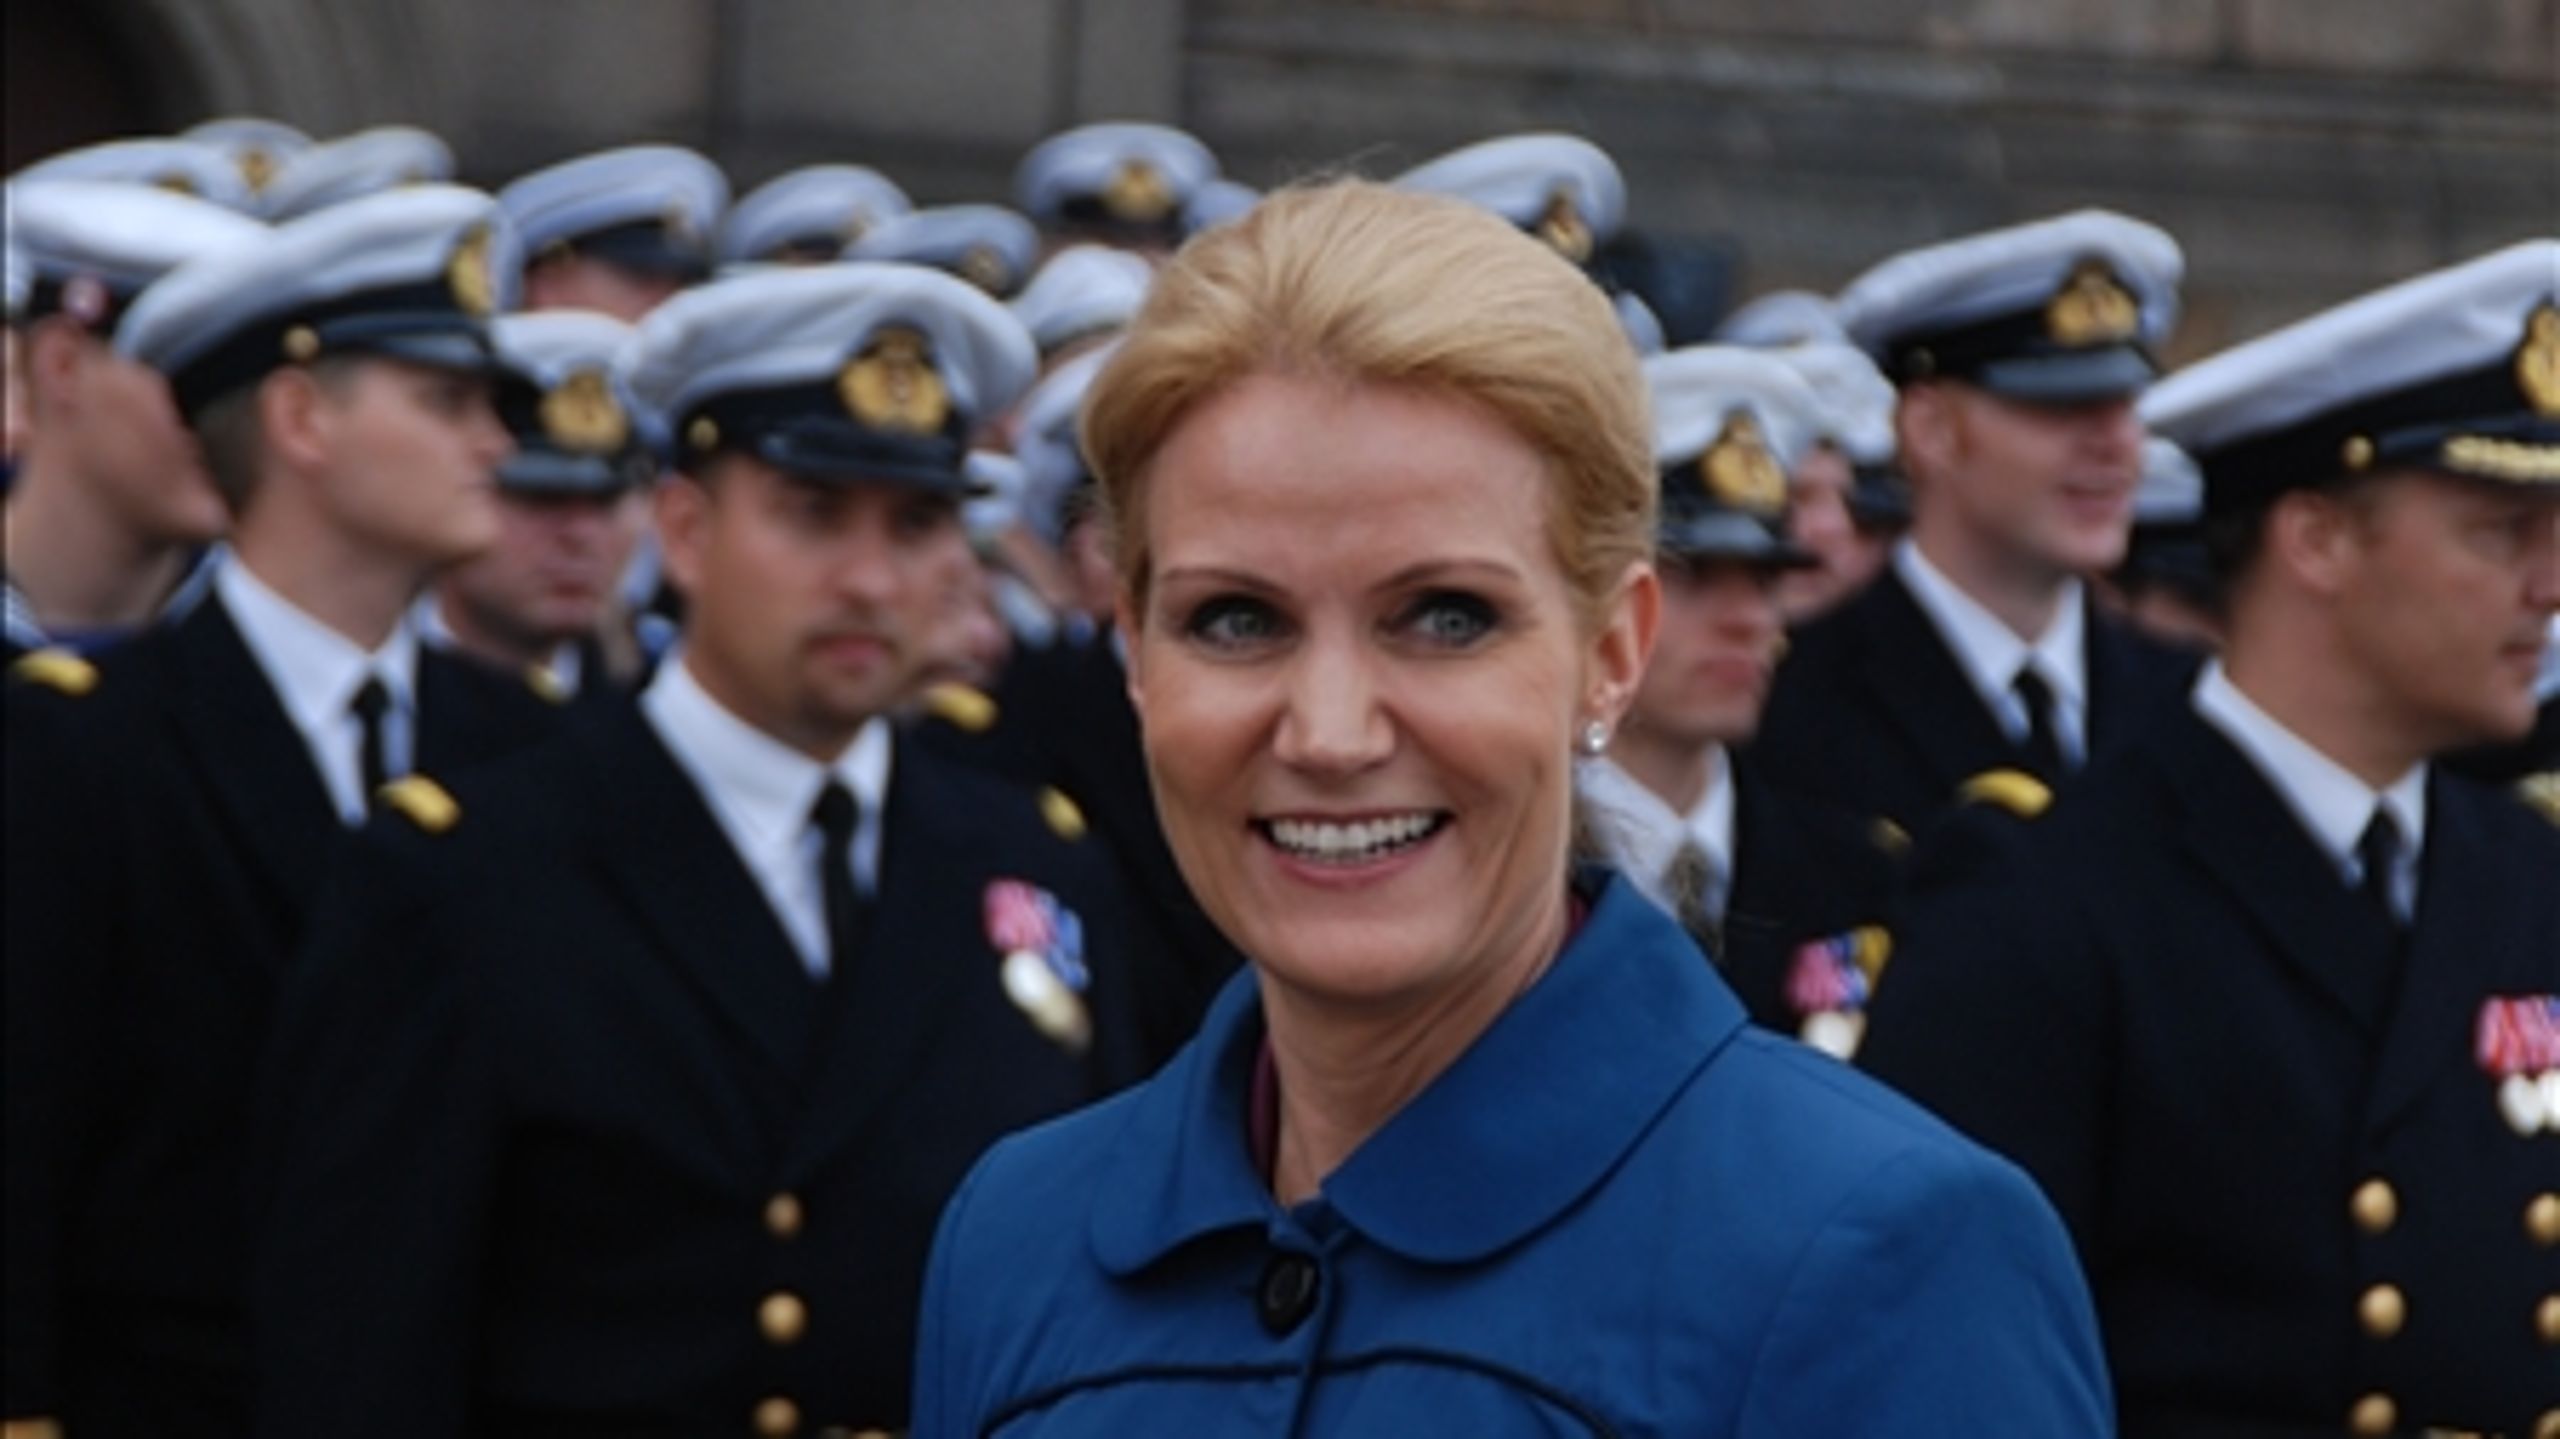 Ifølge meningsmålingerne får Helle Thorning-Schmidt ikke en hær af partifæller med sig i Folketinget.  